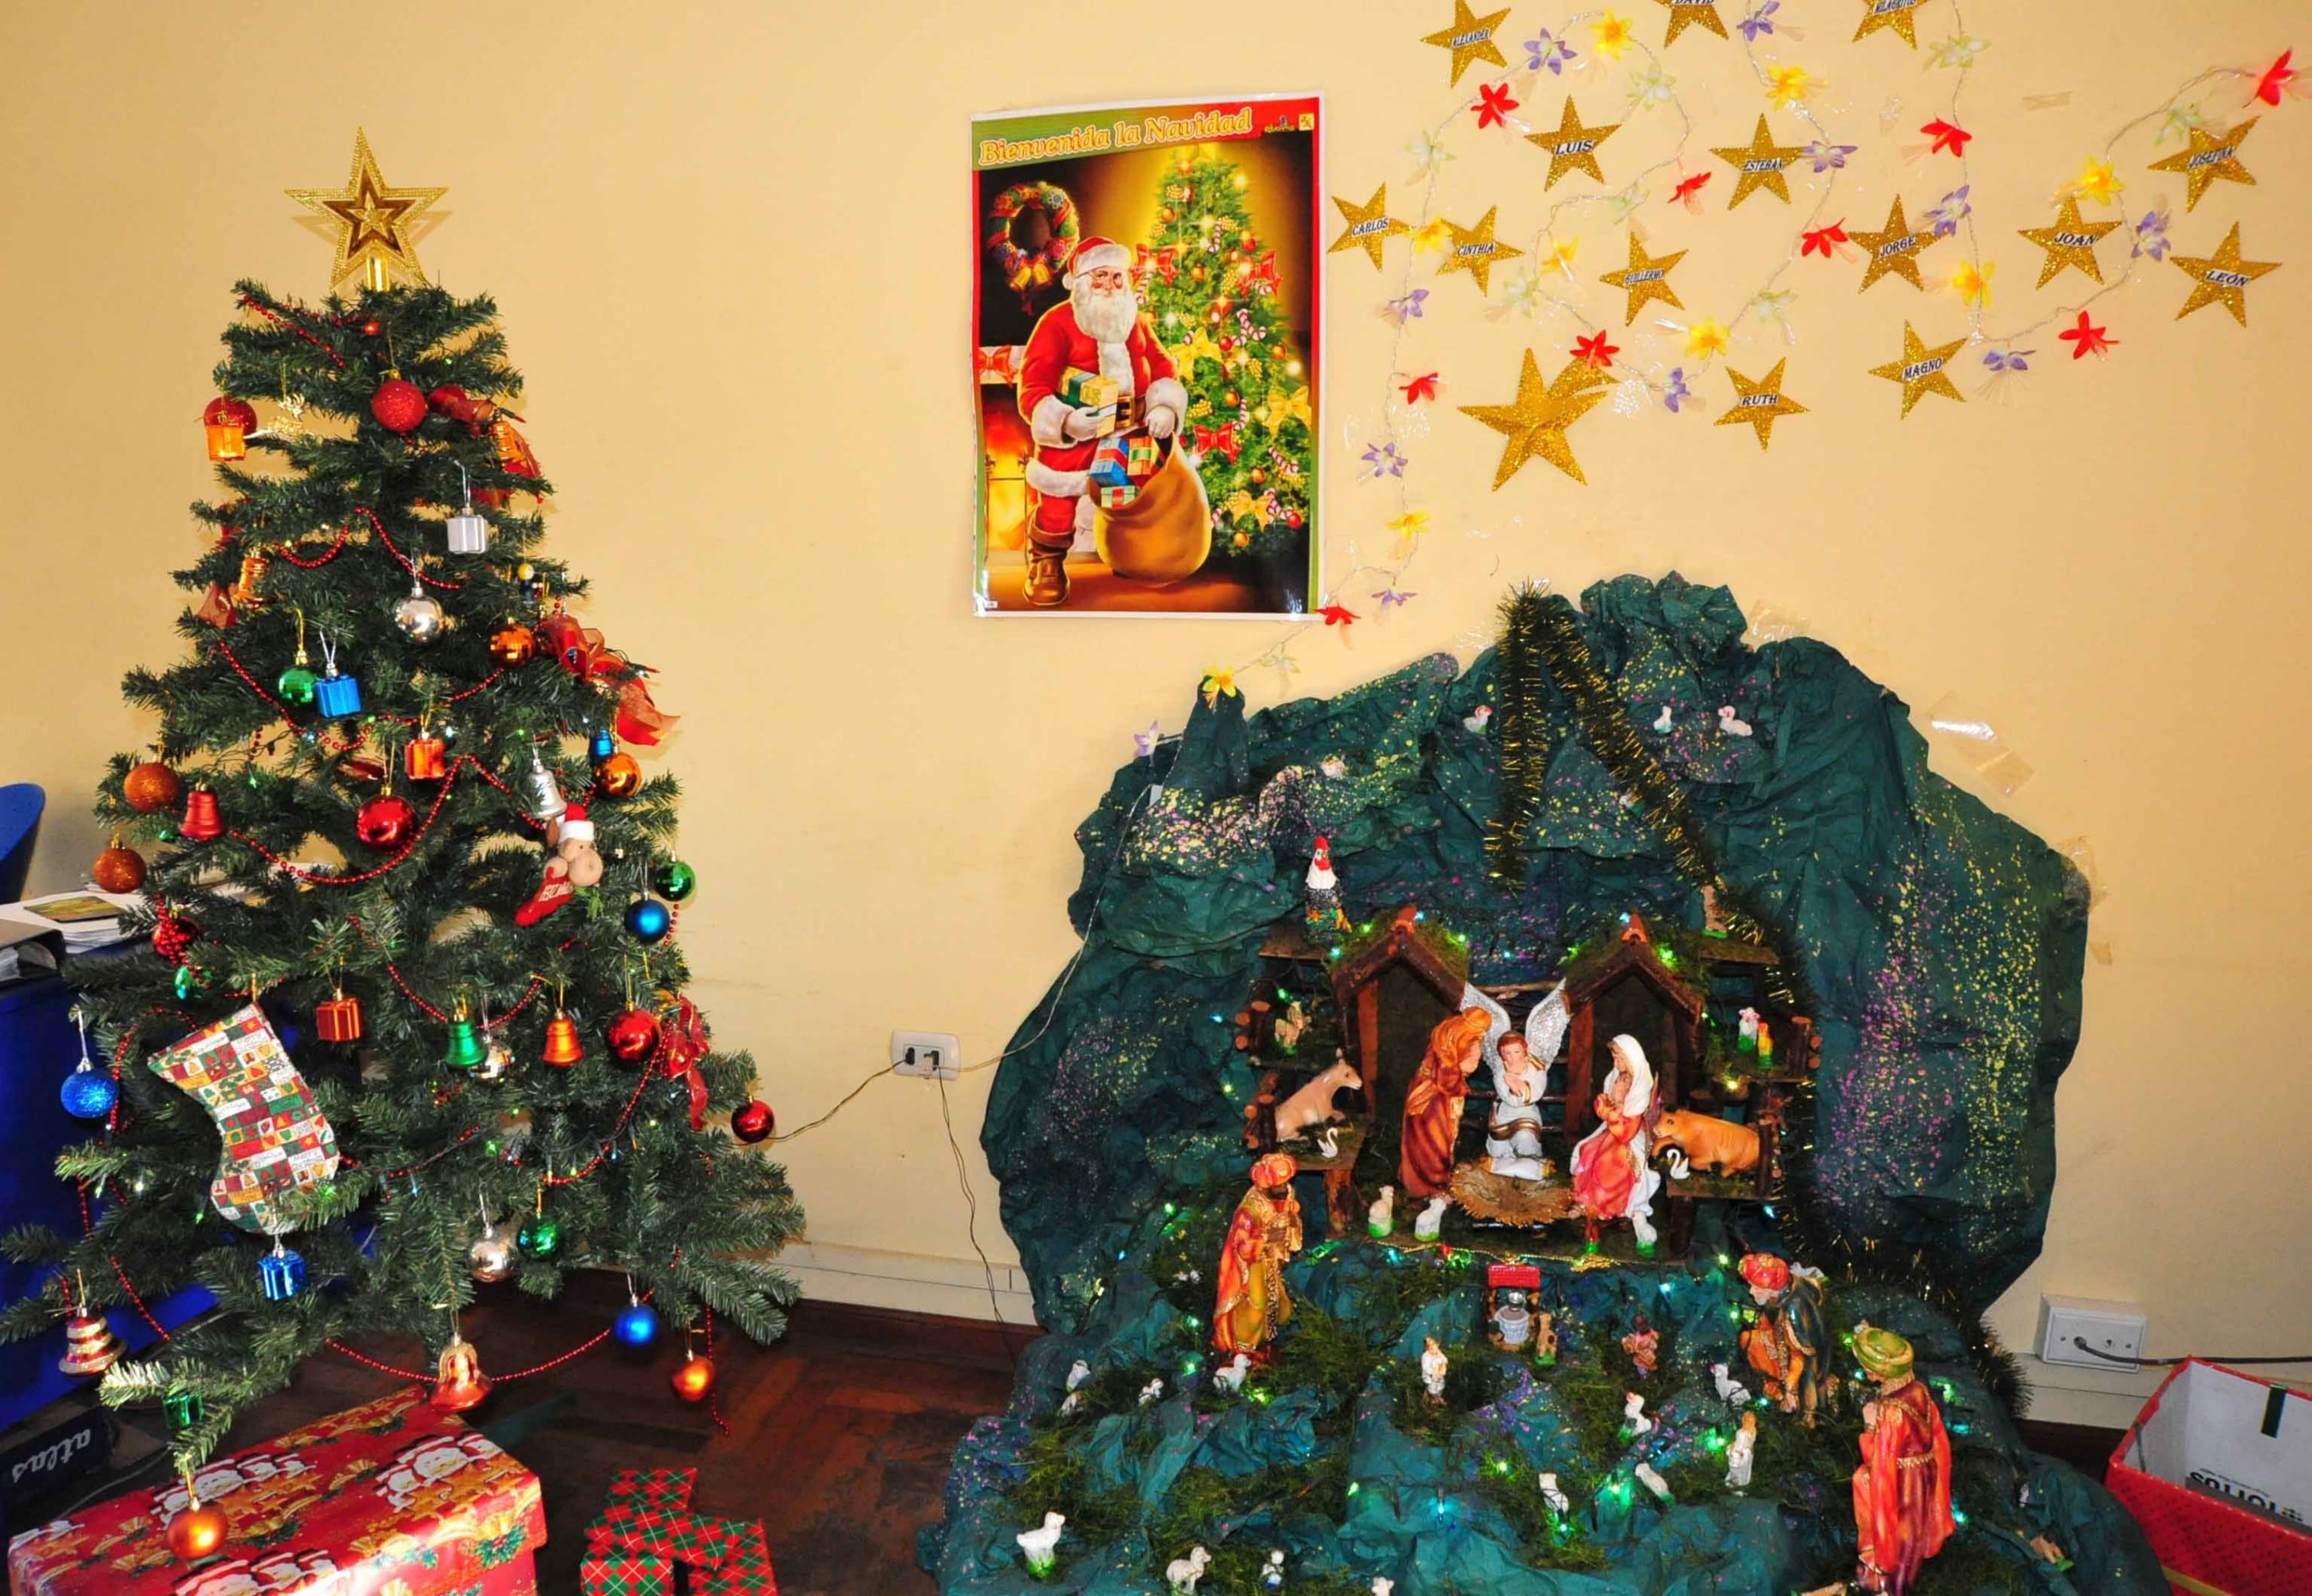 Evite cortocircuitos e incendios por el arbolito y las luces navideñas en su hogar.